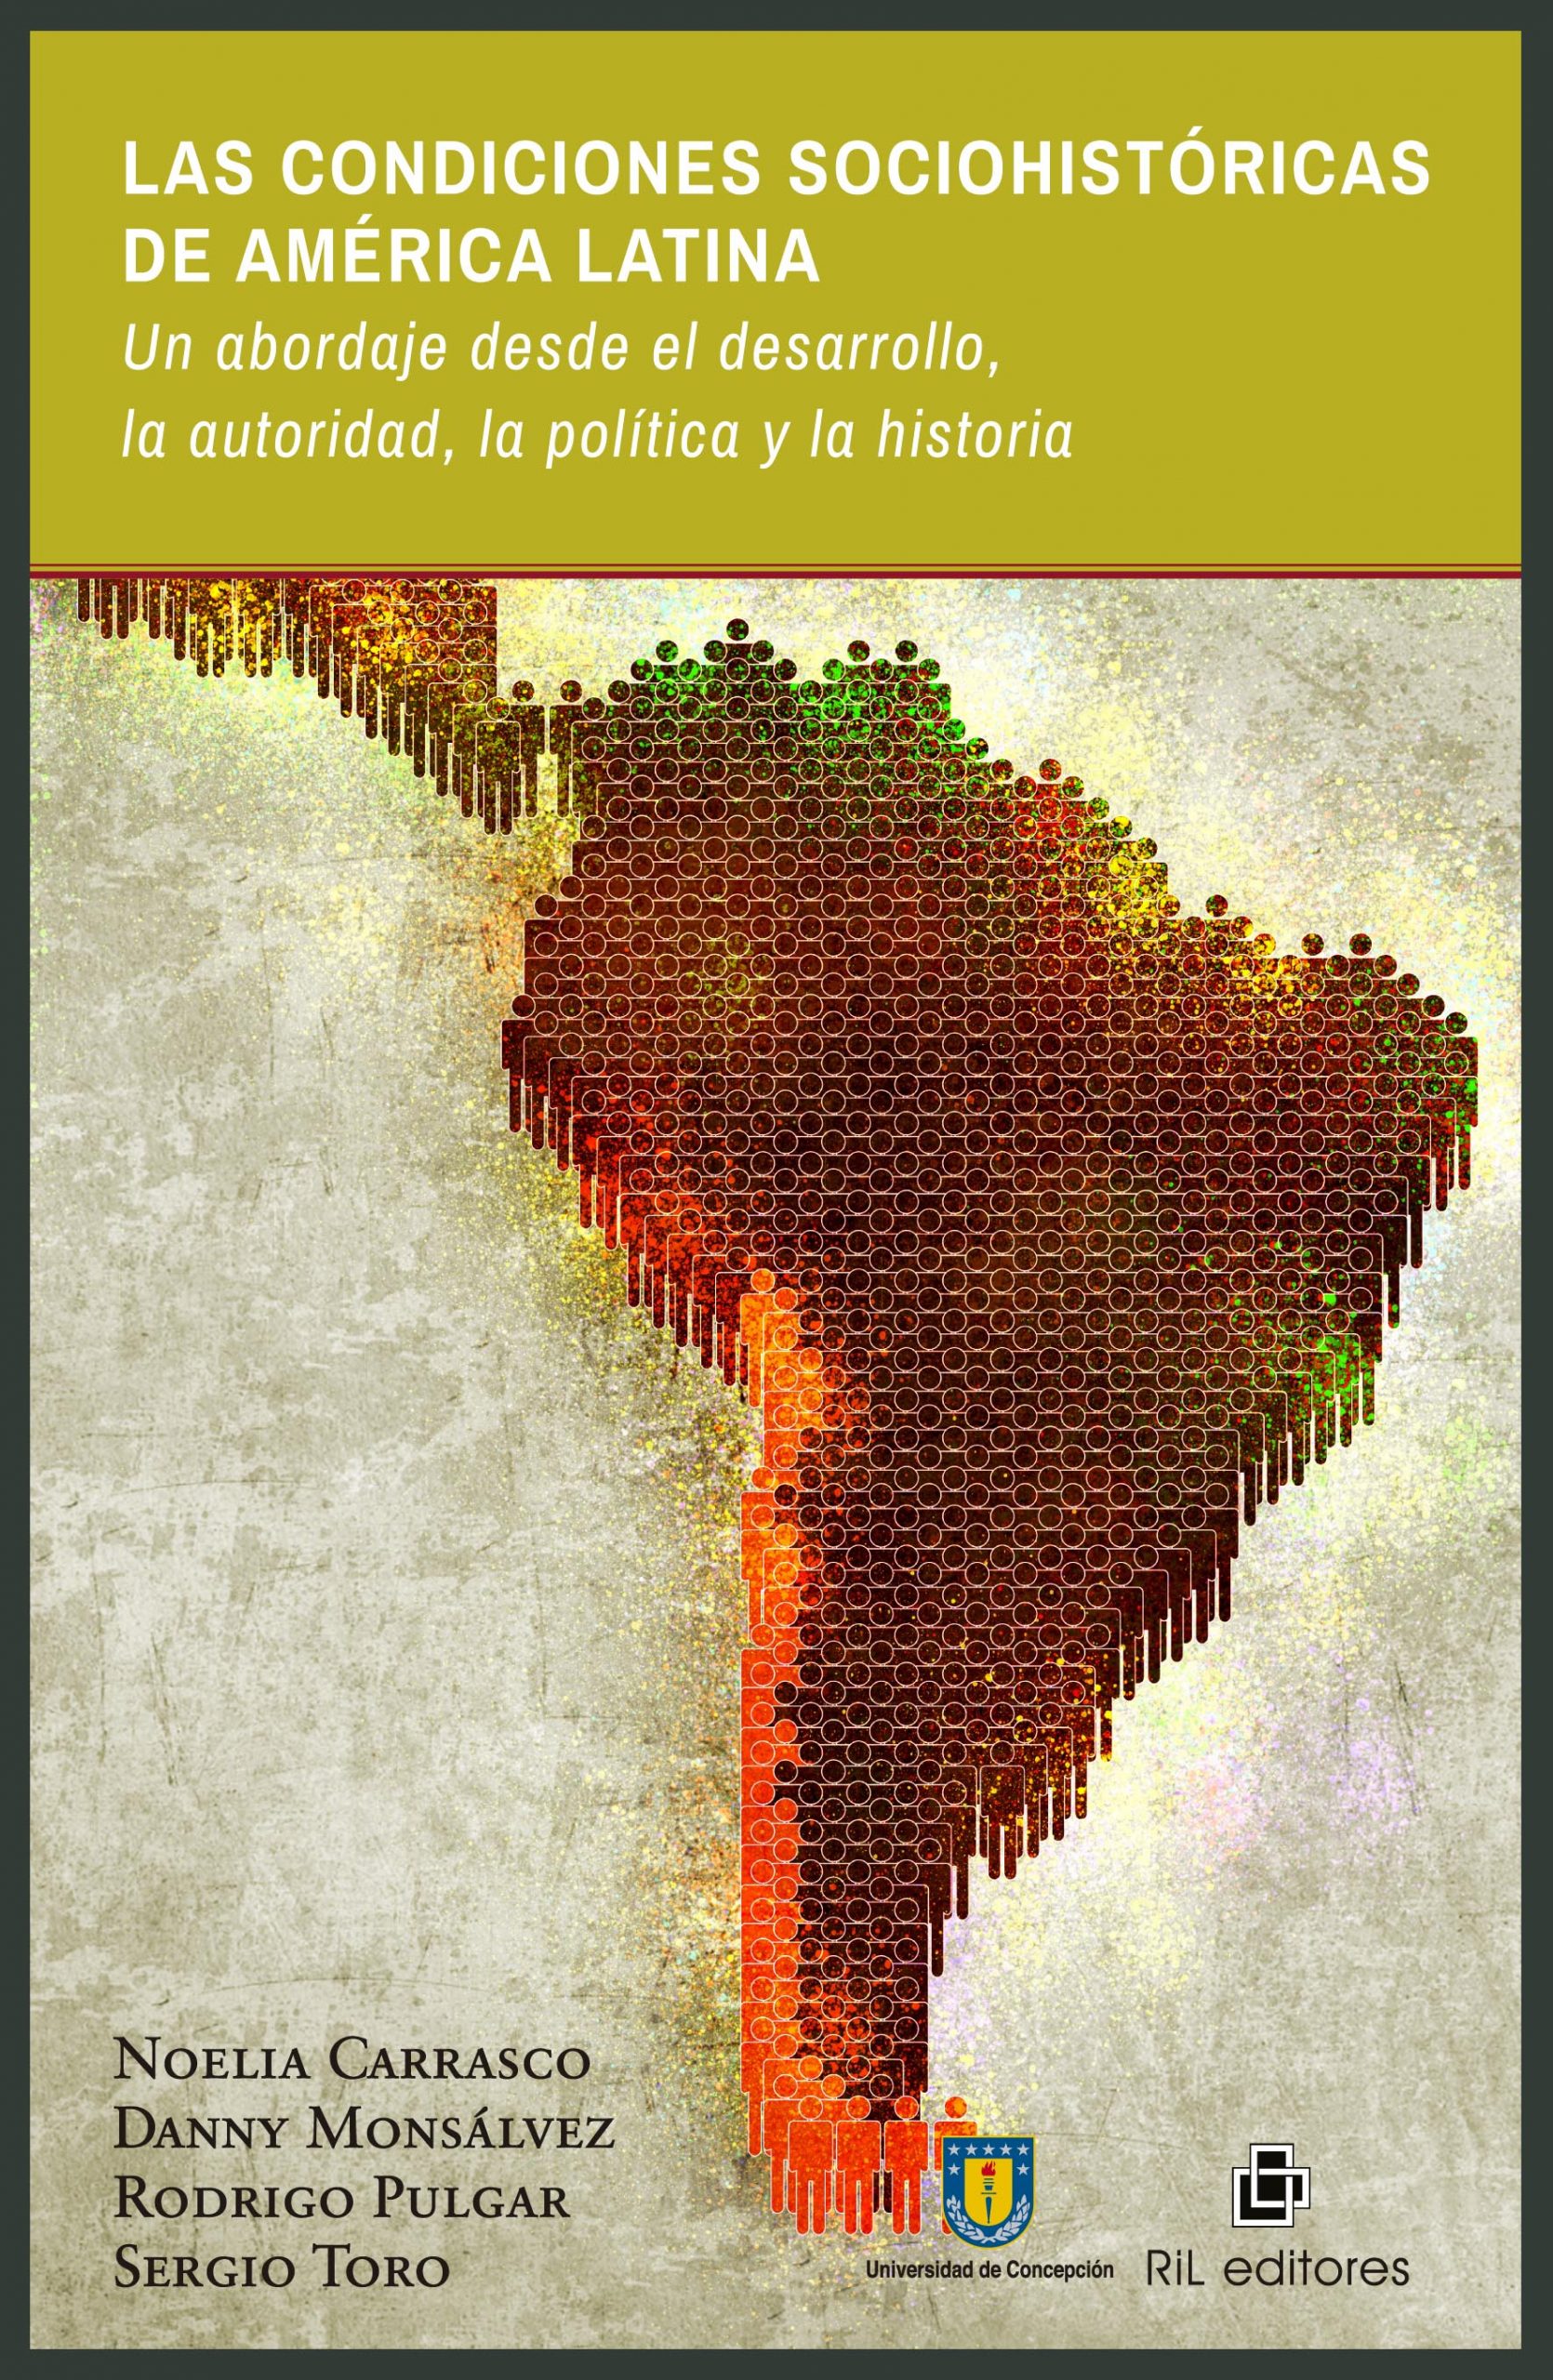 Las condiciones sociohistóricas de América Latina. Un abordaje desde el desarrollo, la autoridad, la política y la historia 1